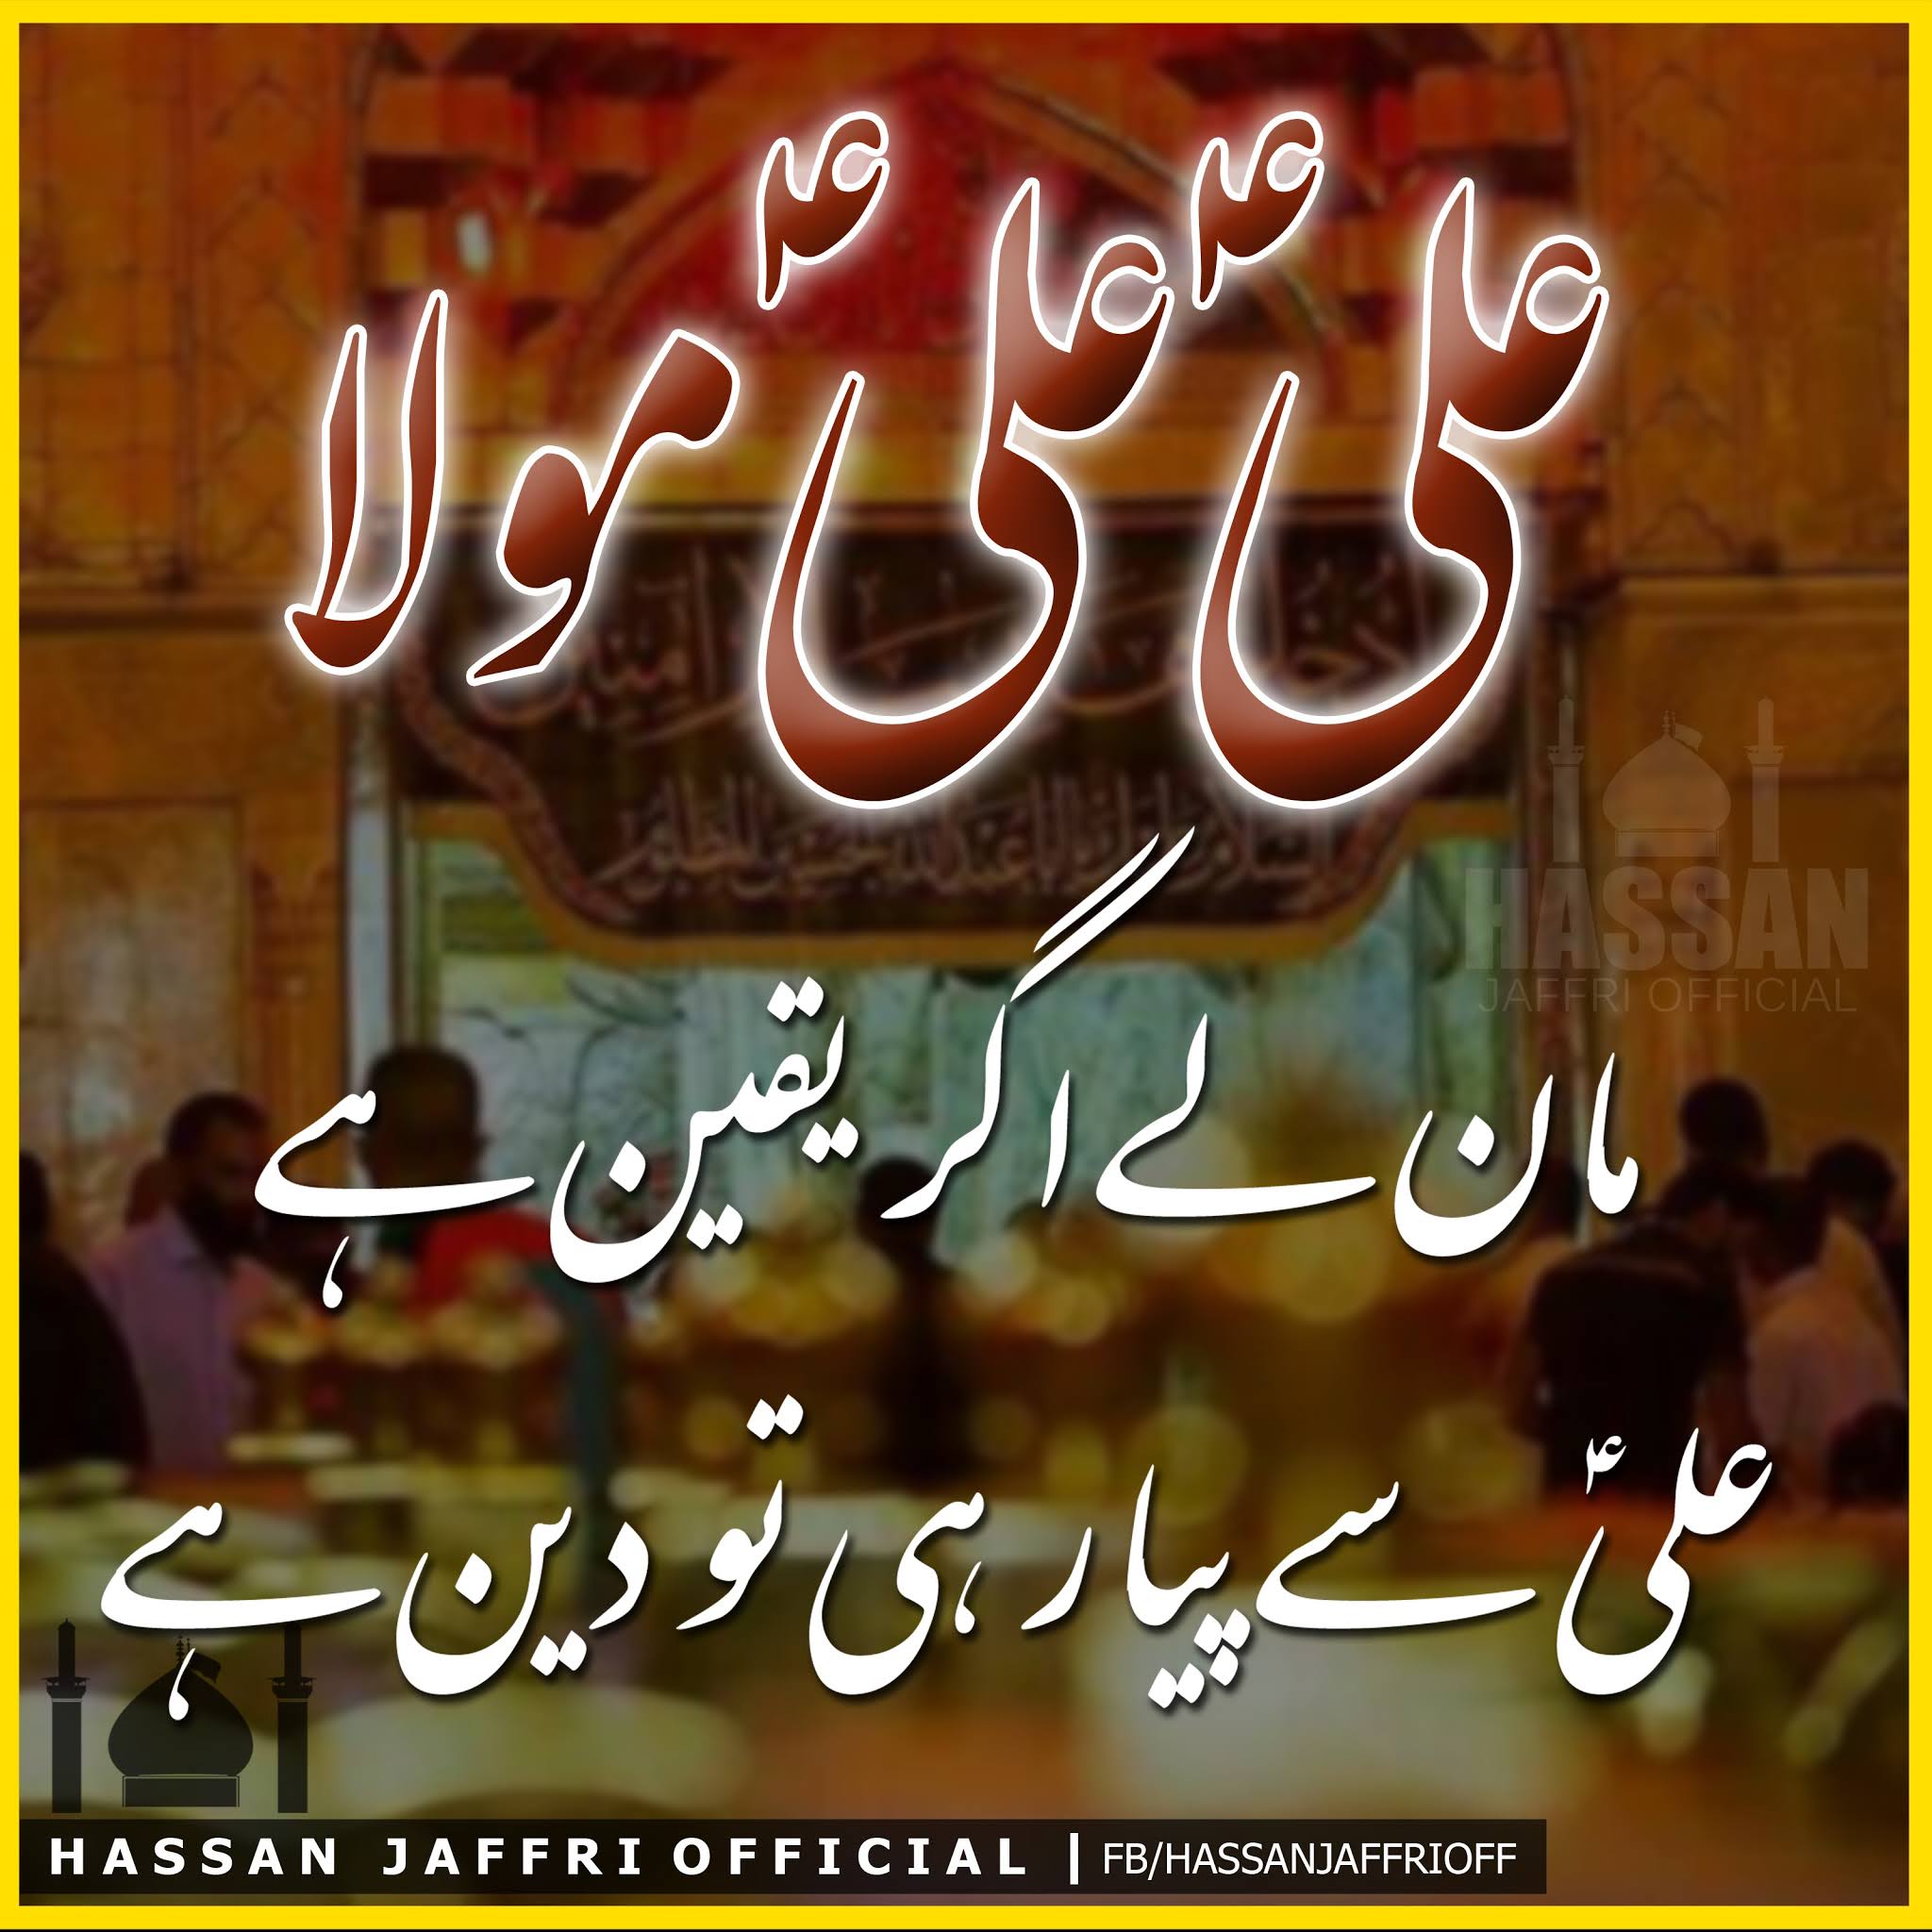 Hazrat Ali wallpaper by 9beel  Download on ZEDGE  b434